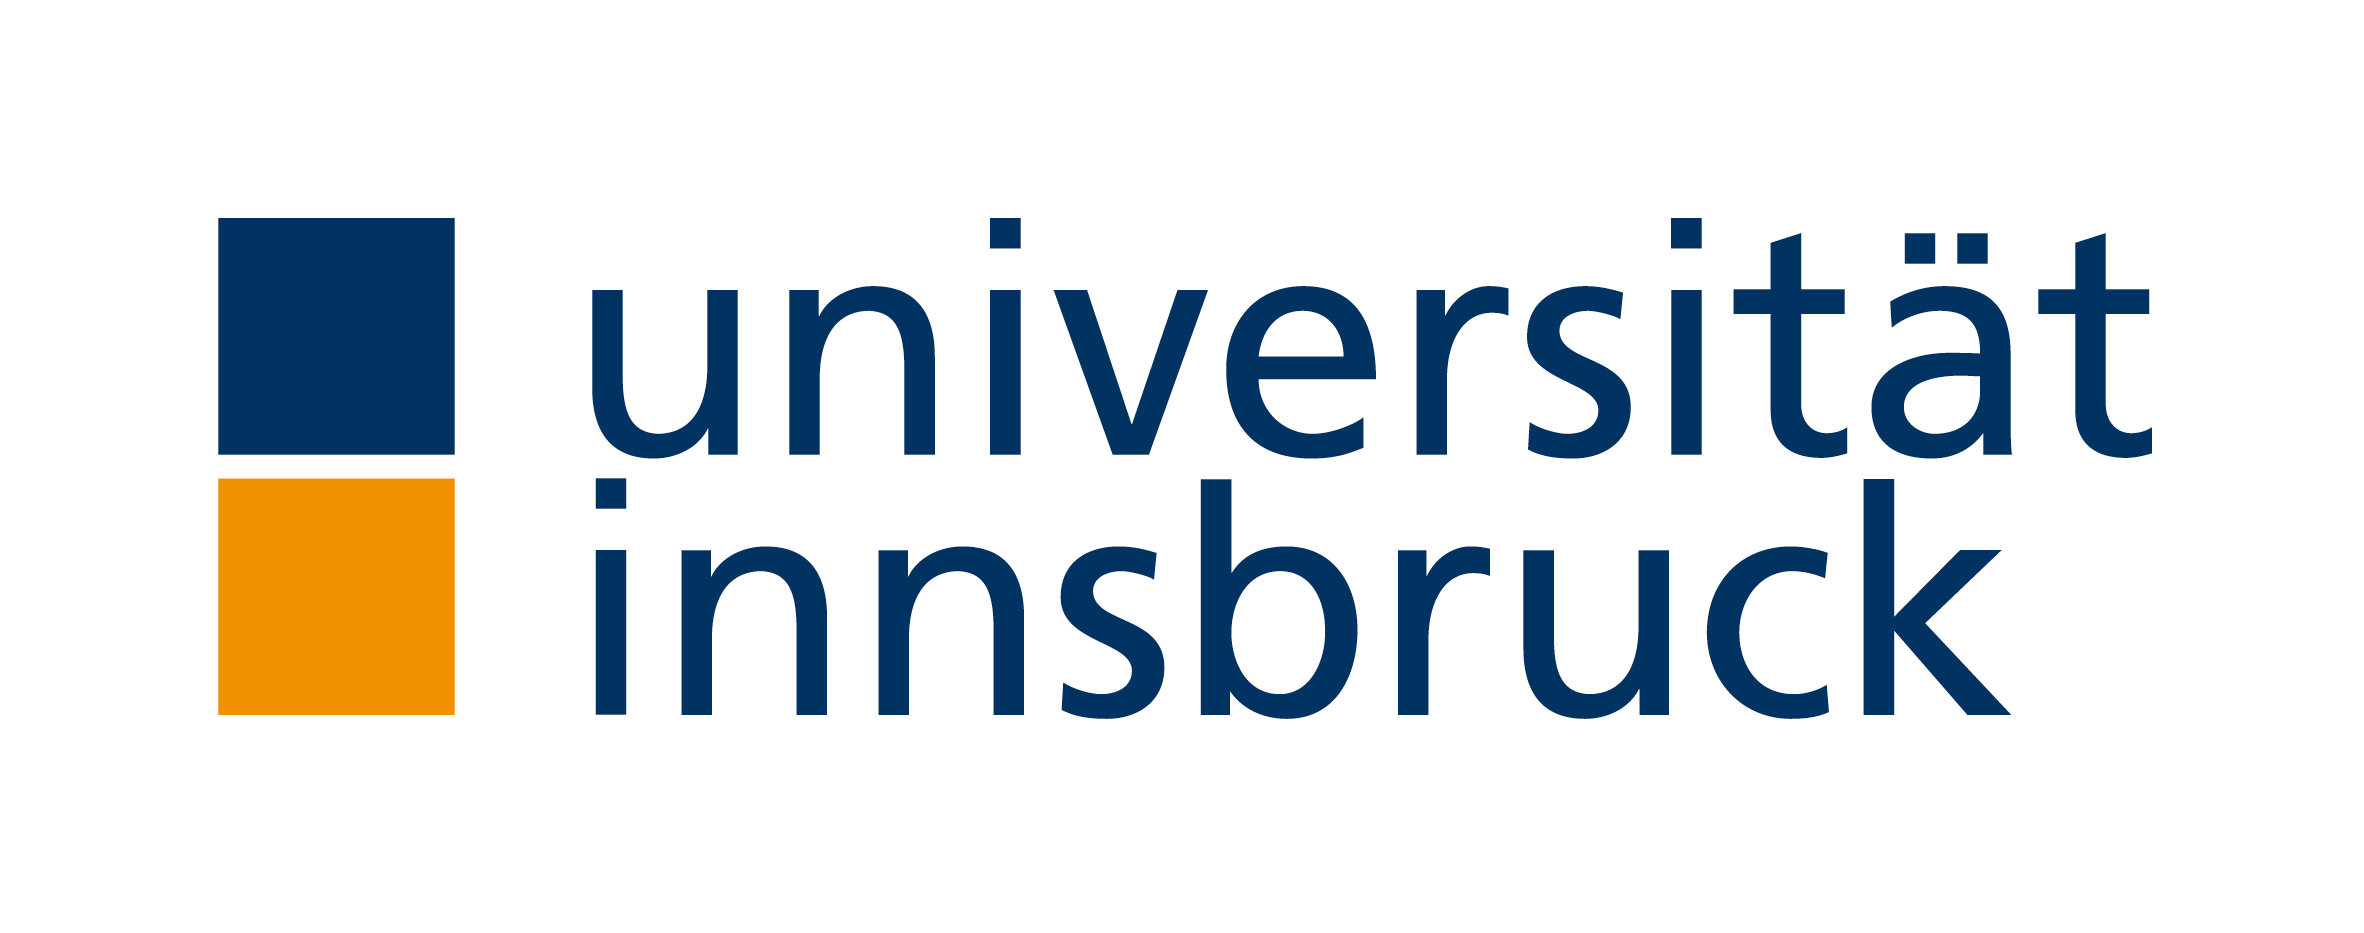 Universität Innsbruck – Wikipedia